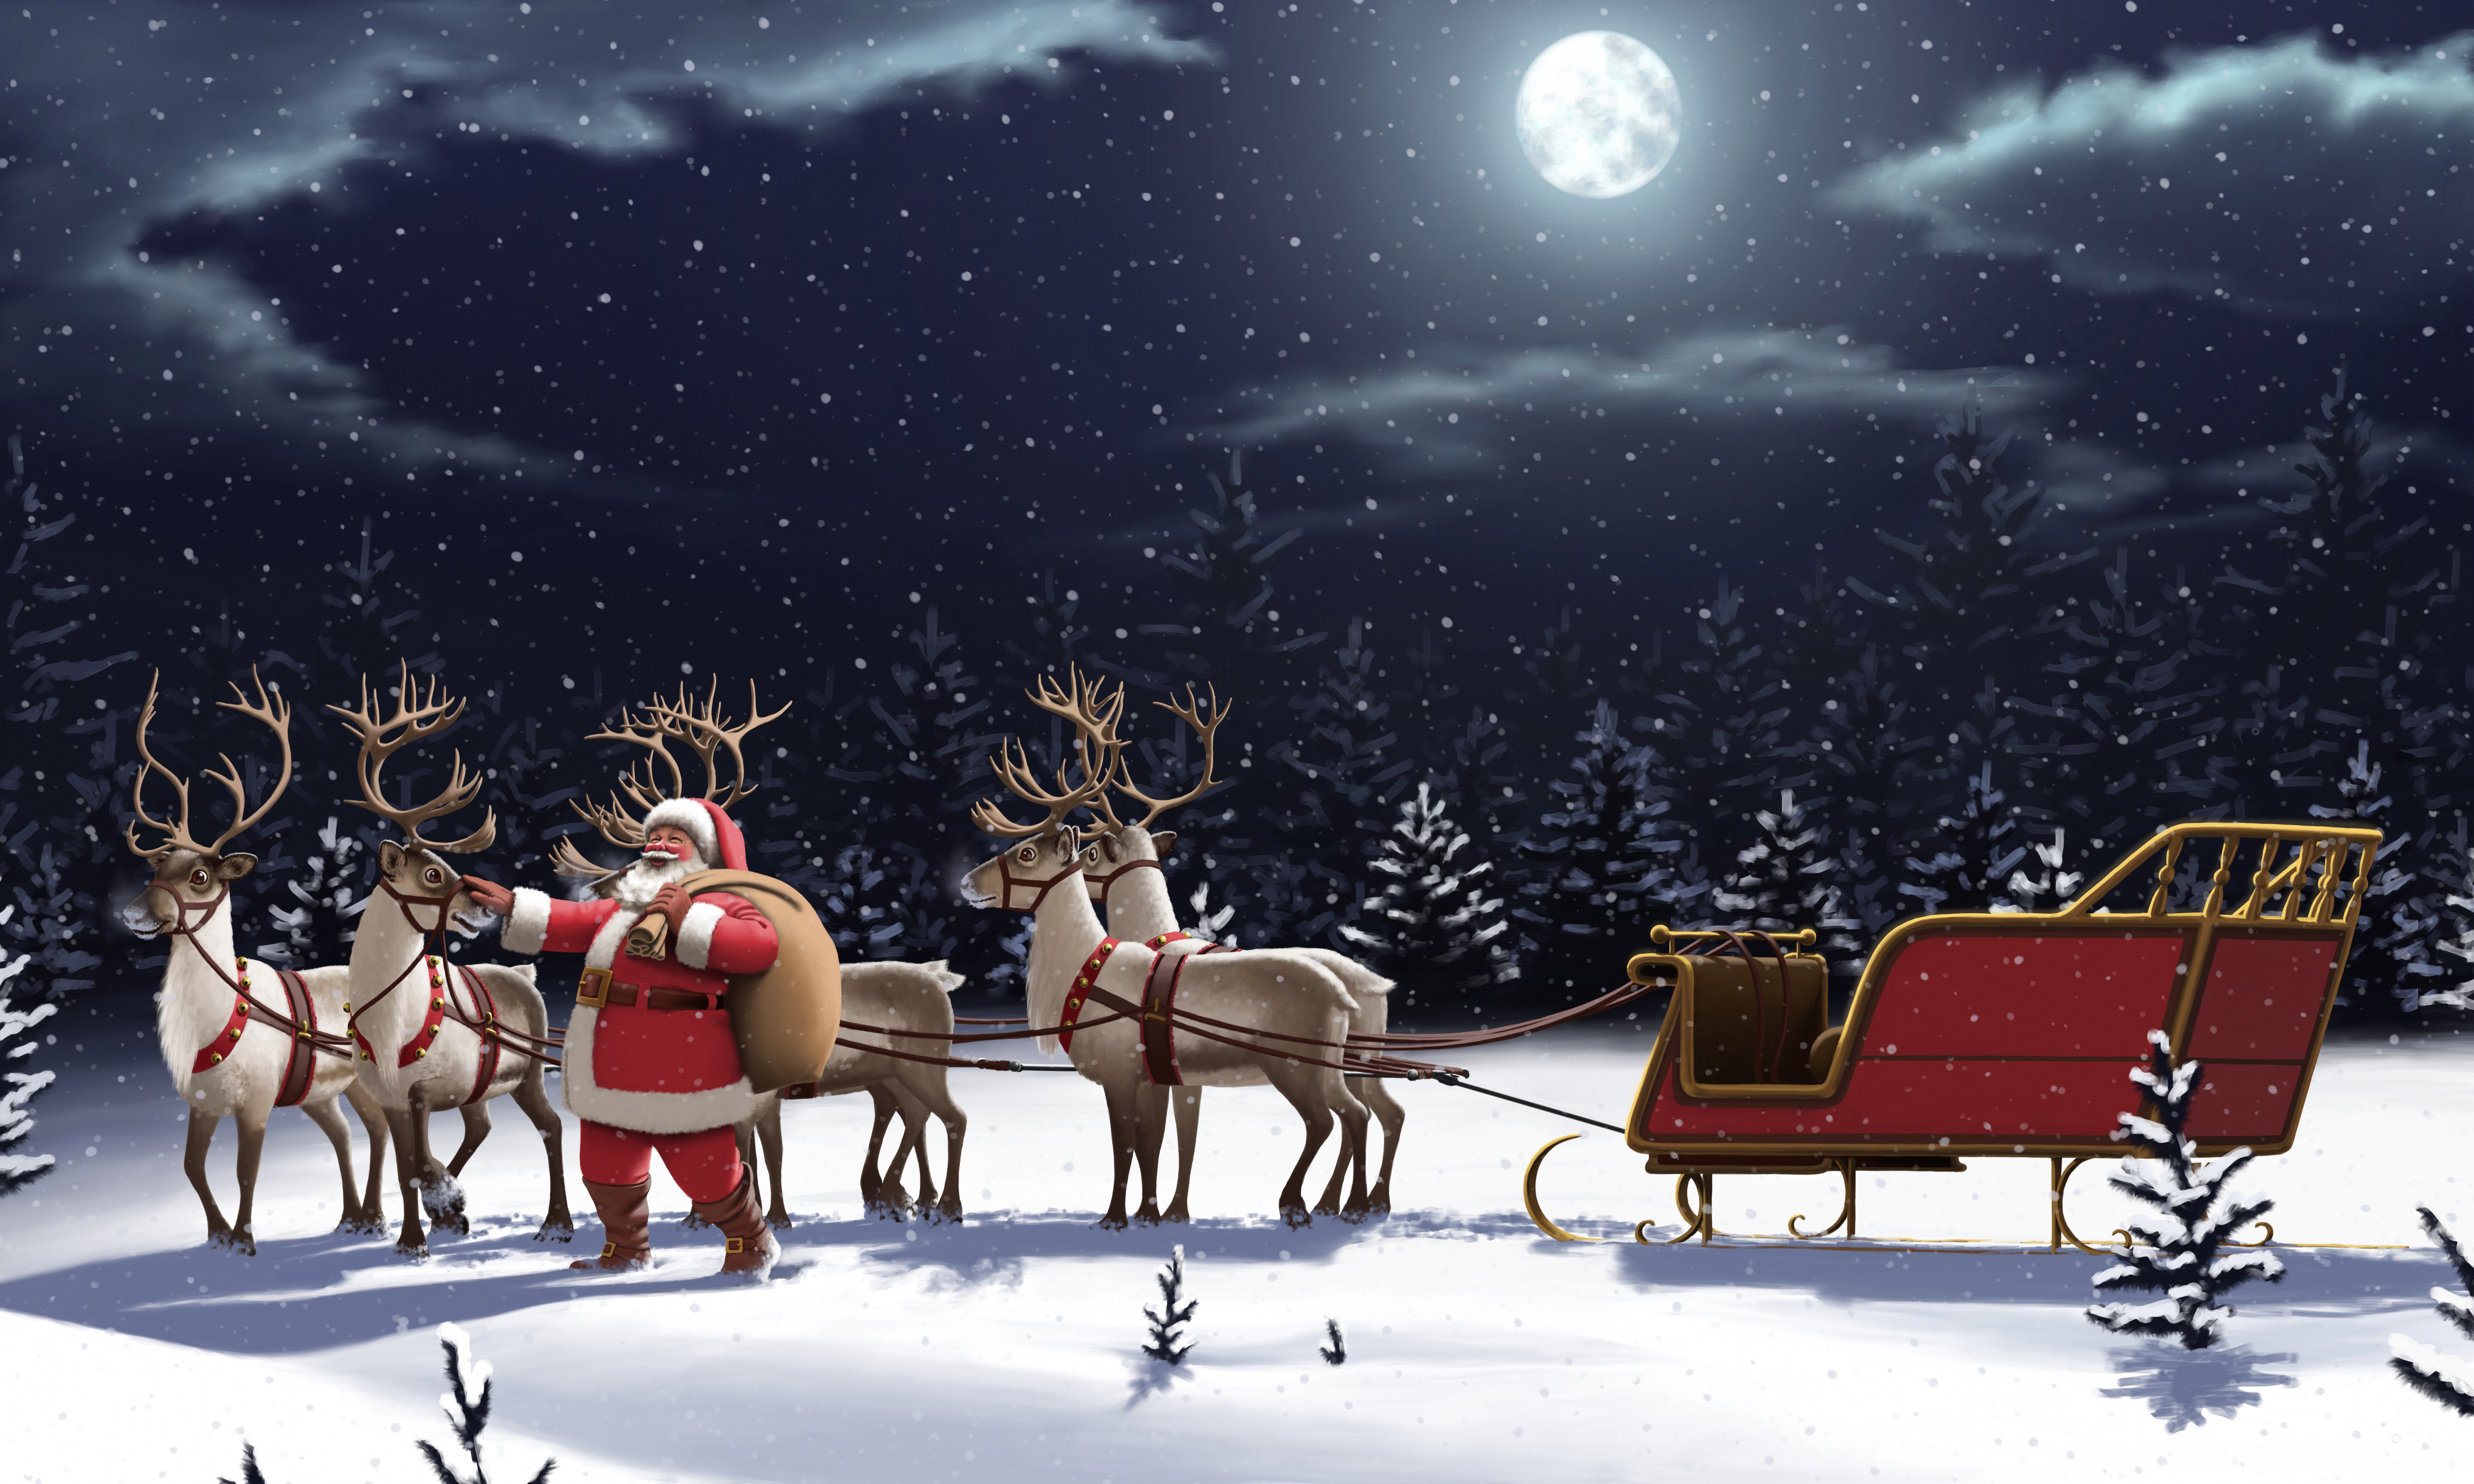 night, reindeer, christmas, snowfall, holiday, moon, santa, sleigh